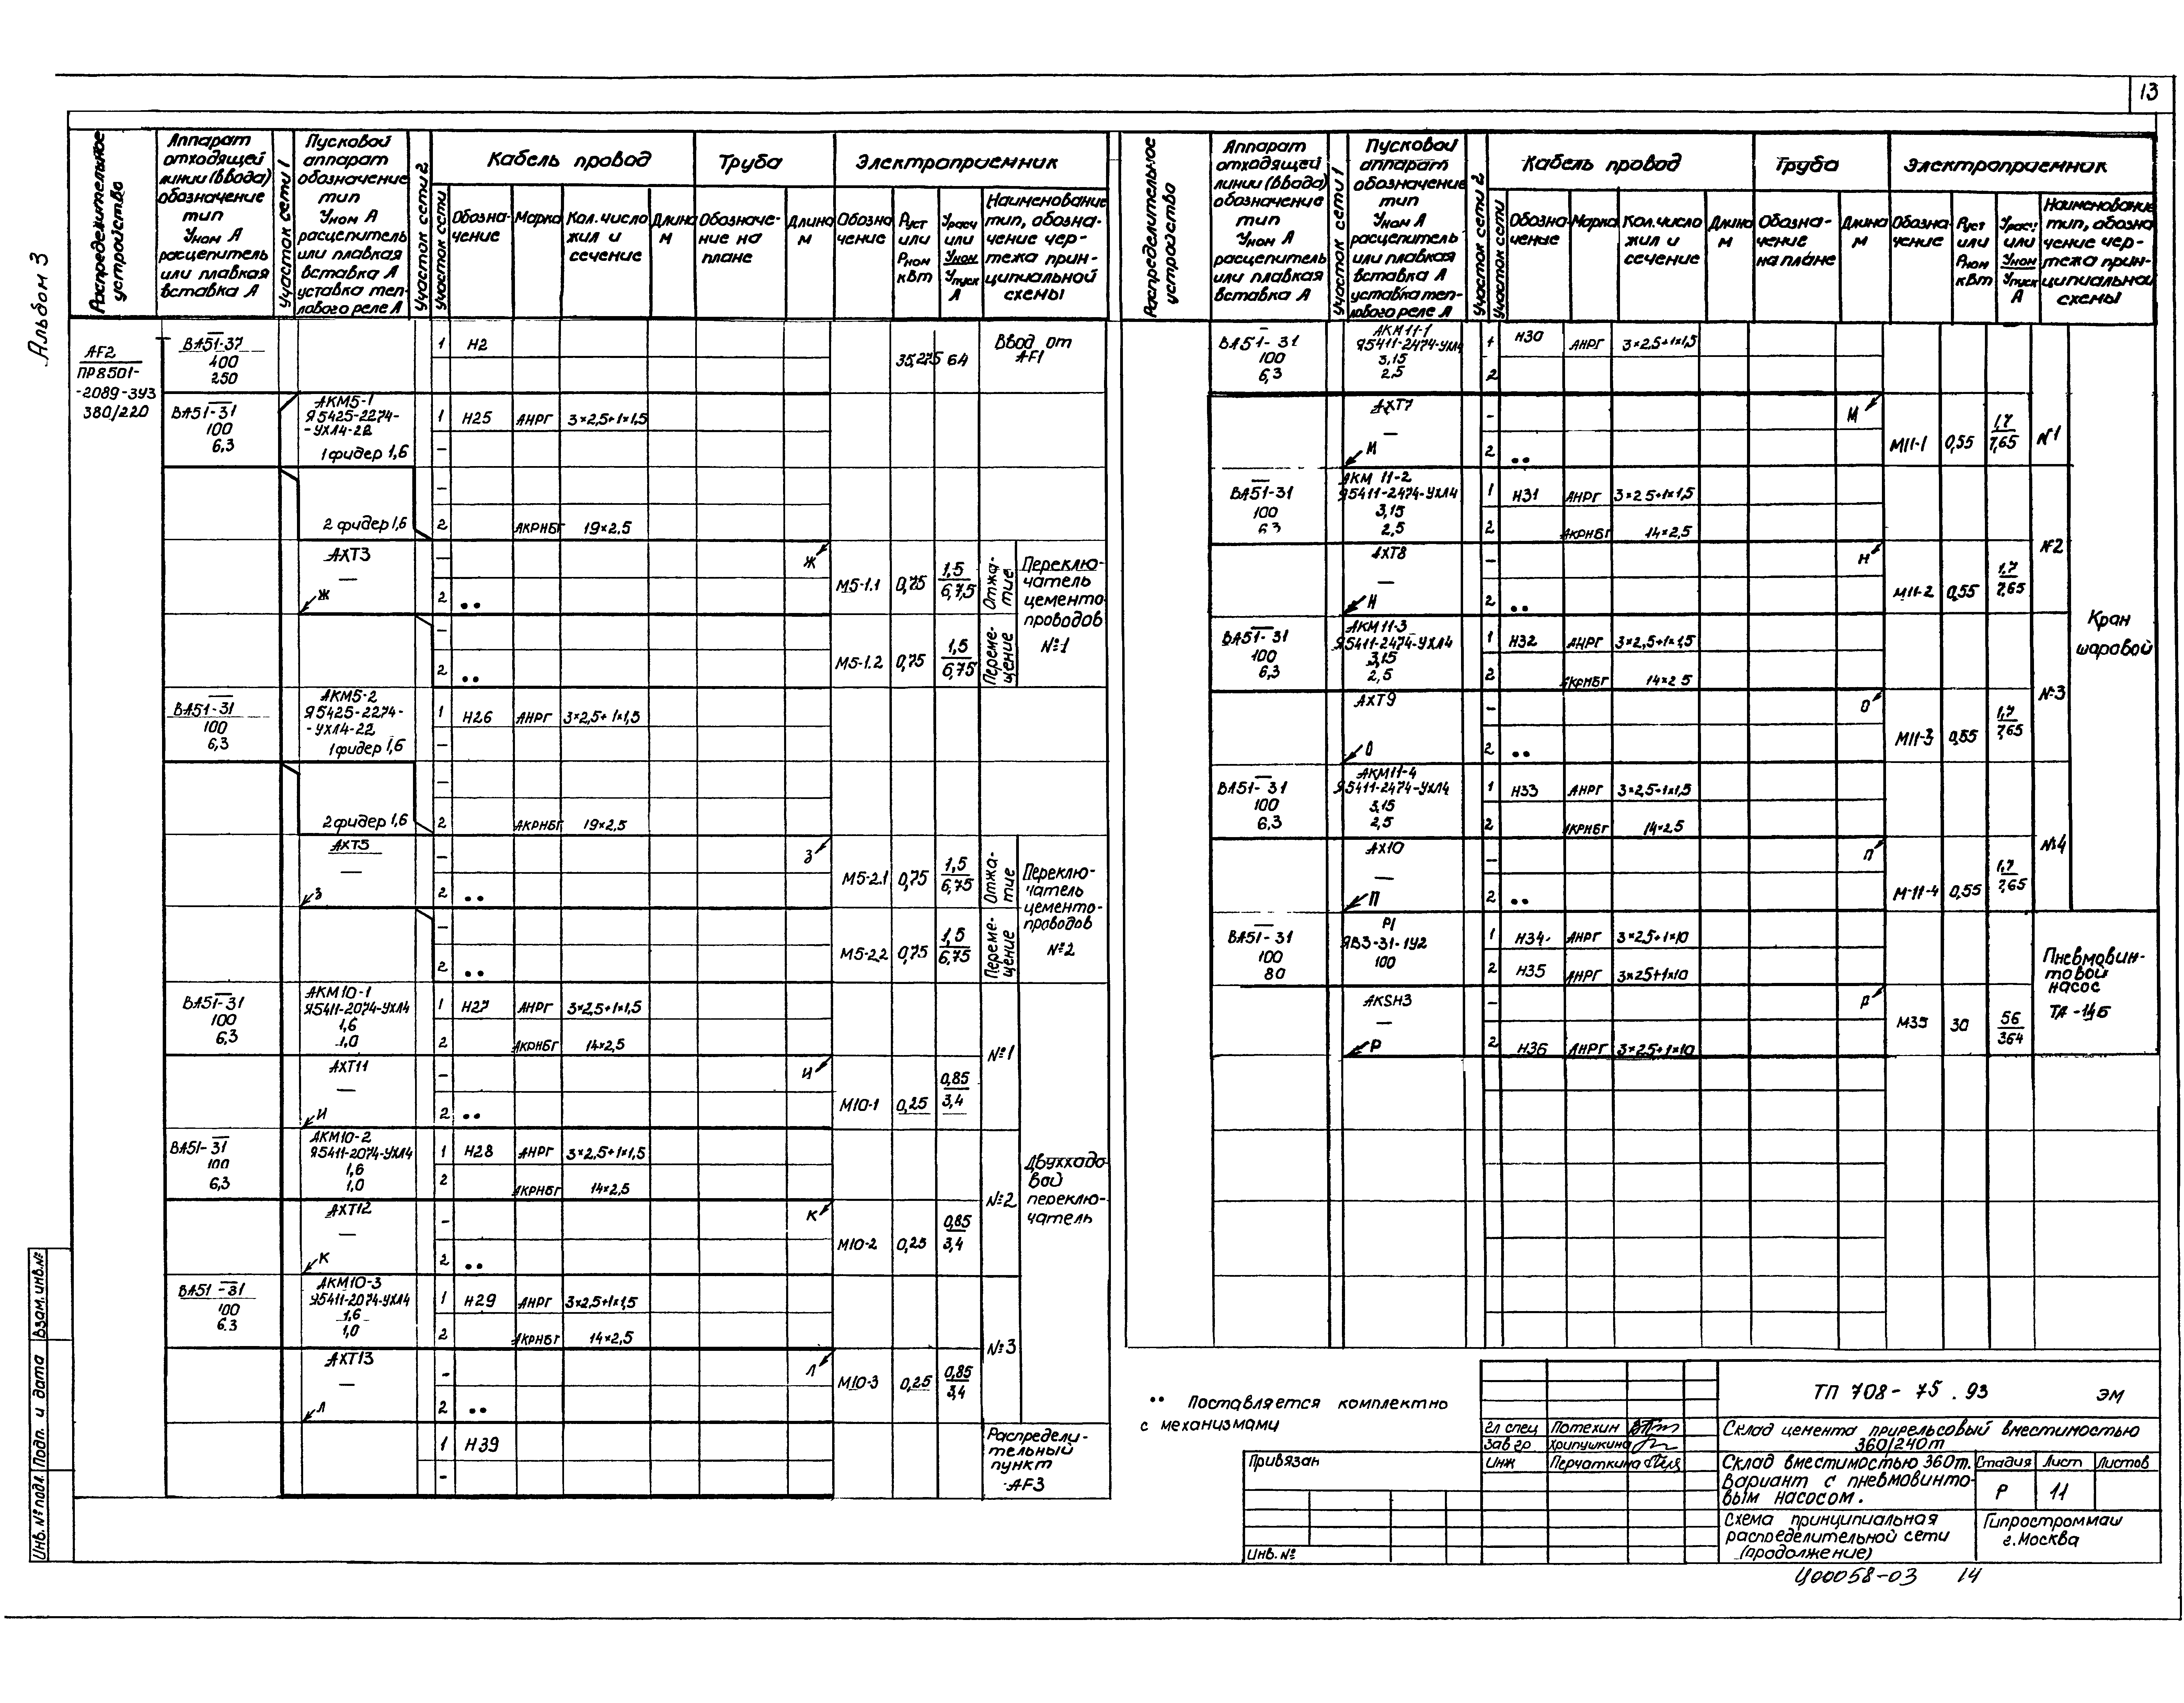 Типовой проект 708-75.93